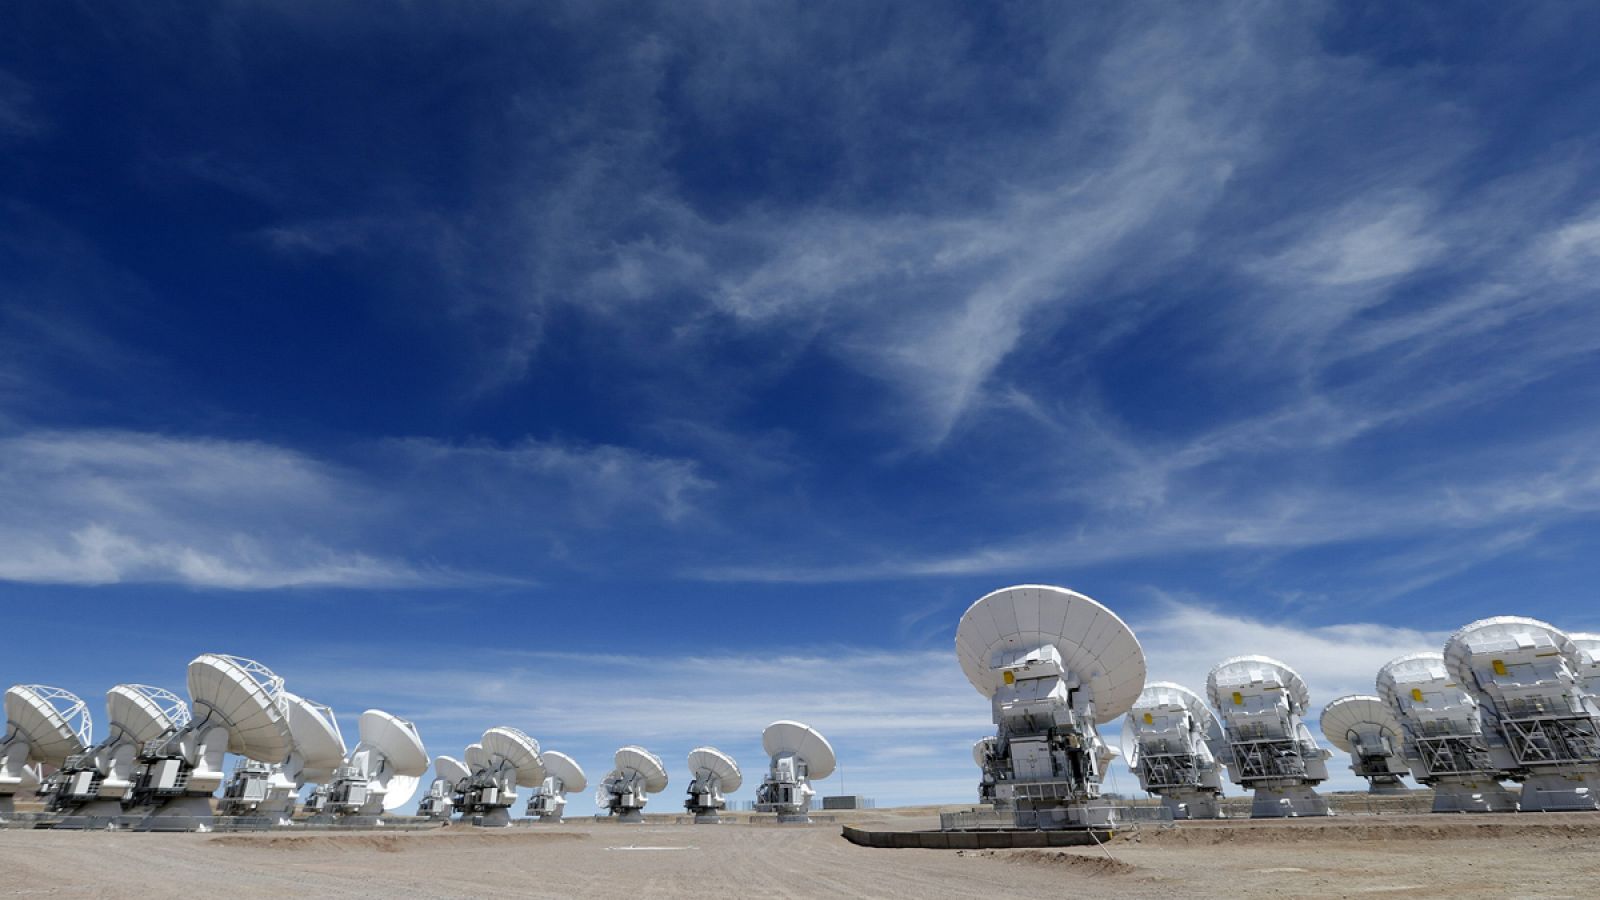 Vista general del conjunto de antenas radiotelescópicas que forman parte del Atacama Large Milimeter Array (ALMA).